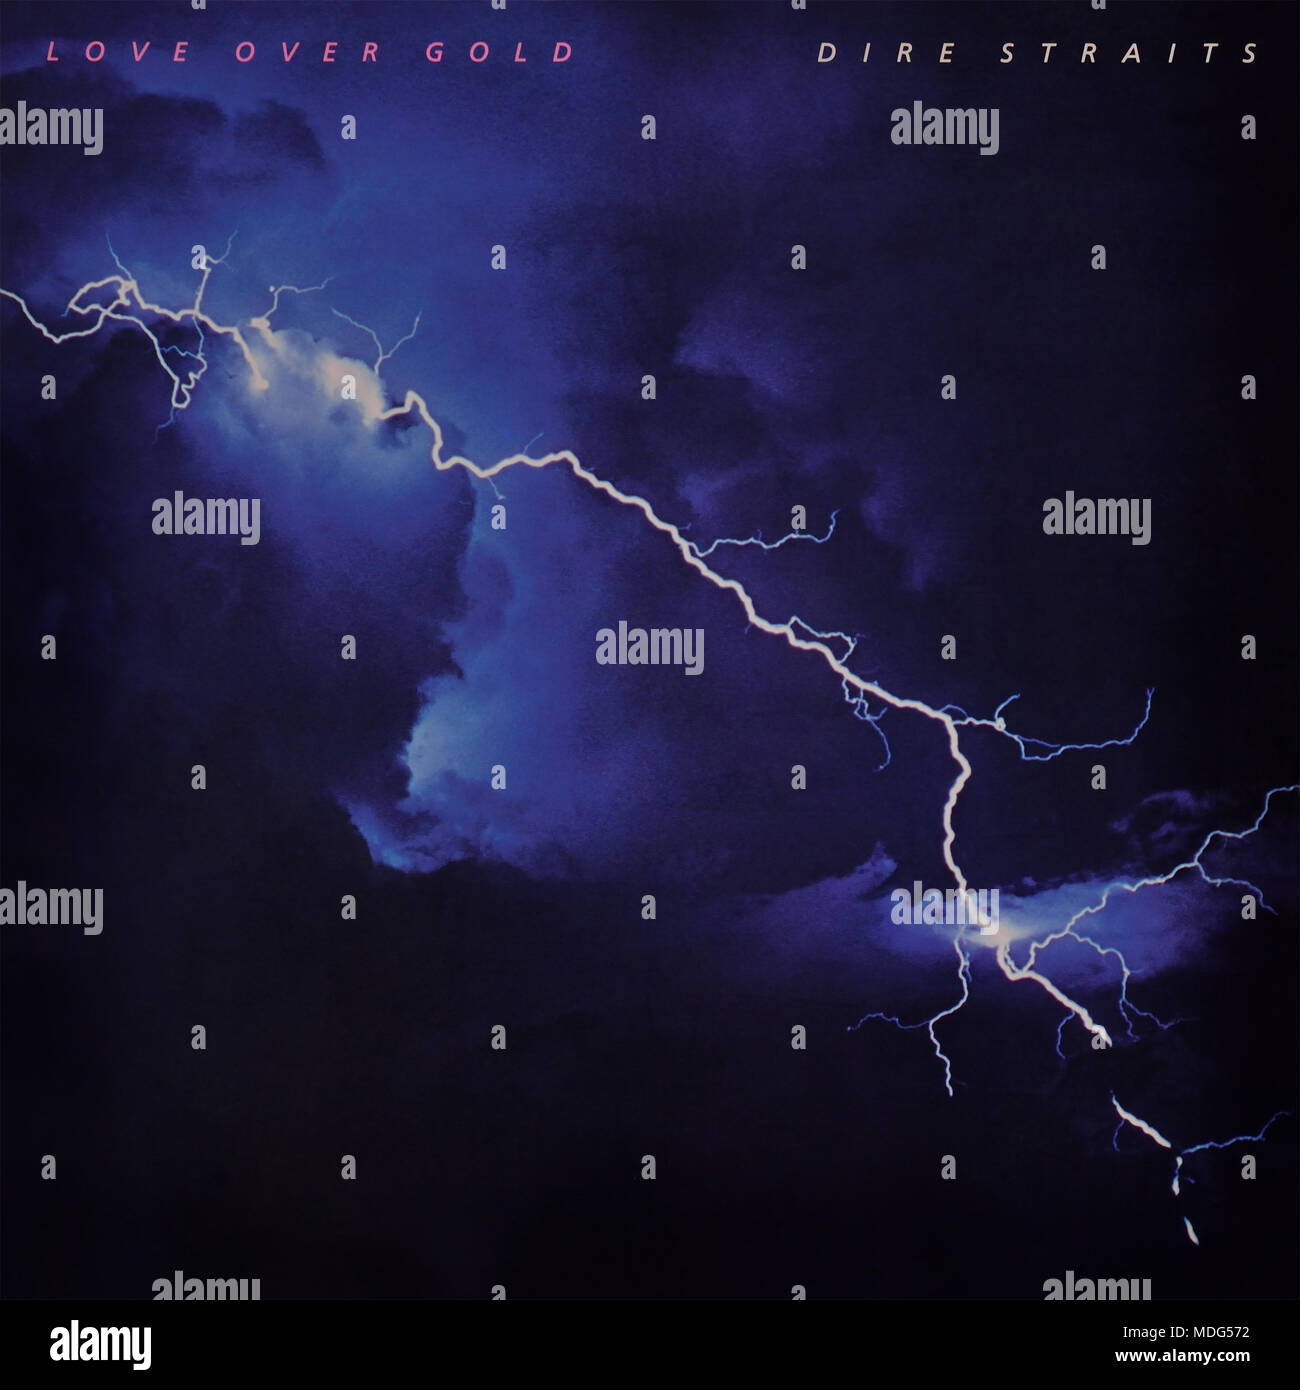 Dire Straits - pochette originale de l'album en vinyle - Love Over Gold - 1982 Banque D'Images